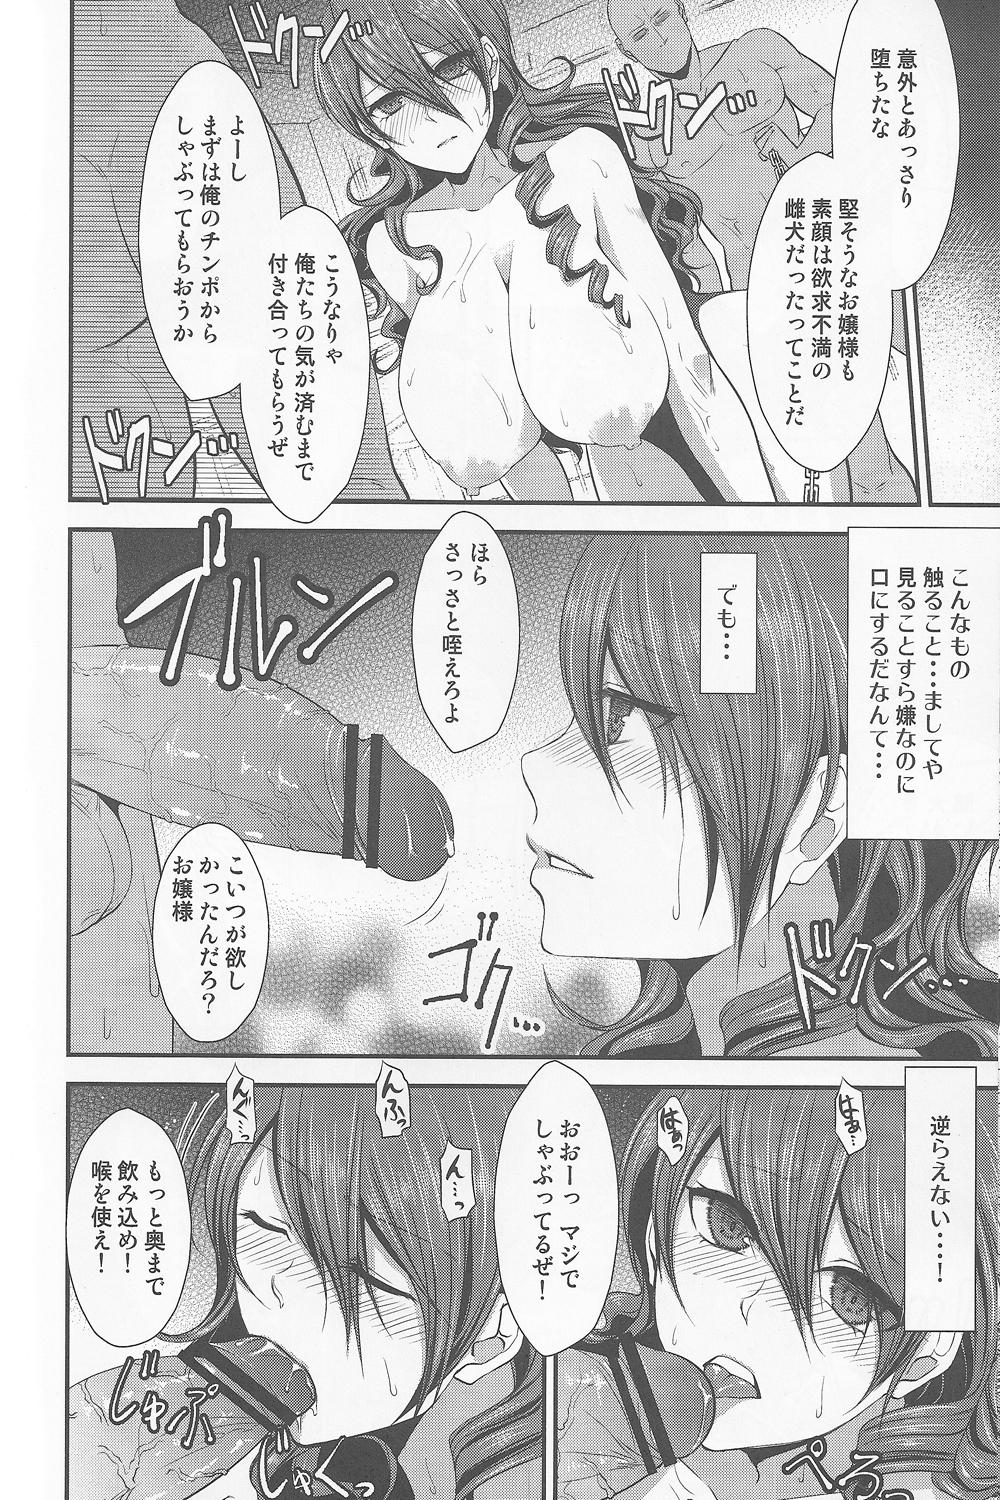 Buceta Shokuzai - Persona 3 Flaquita - Page 11